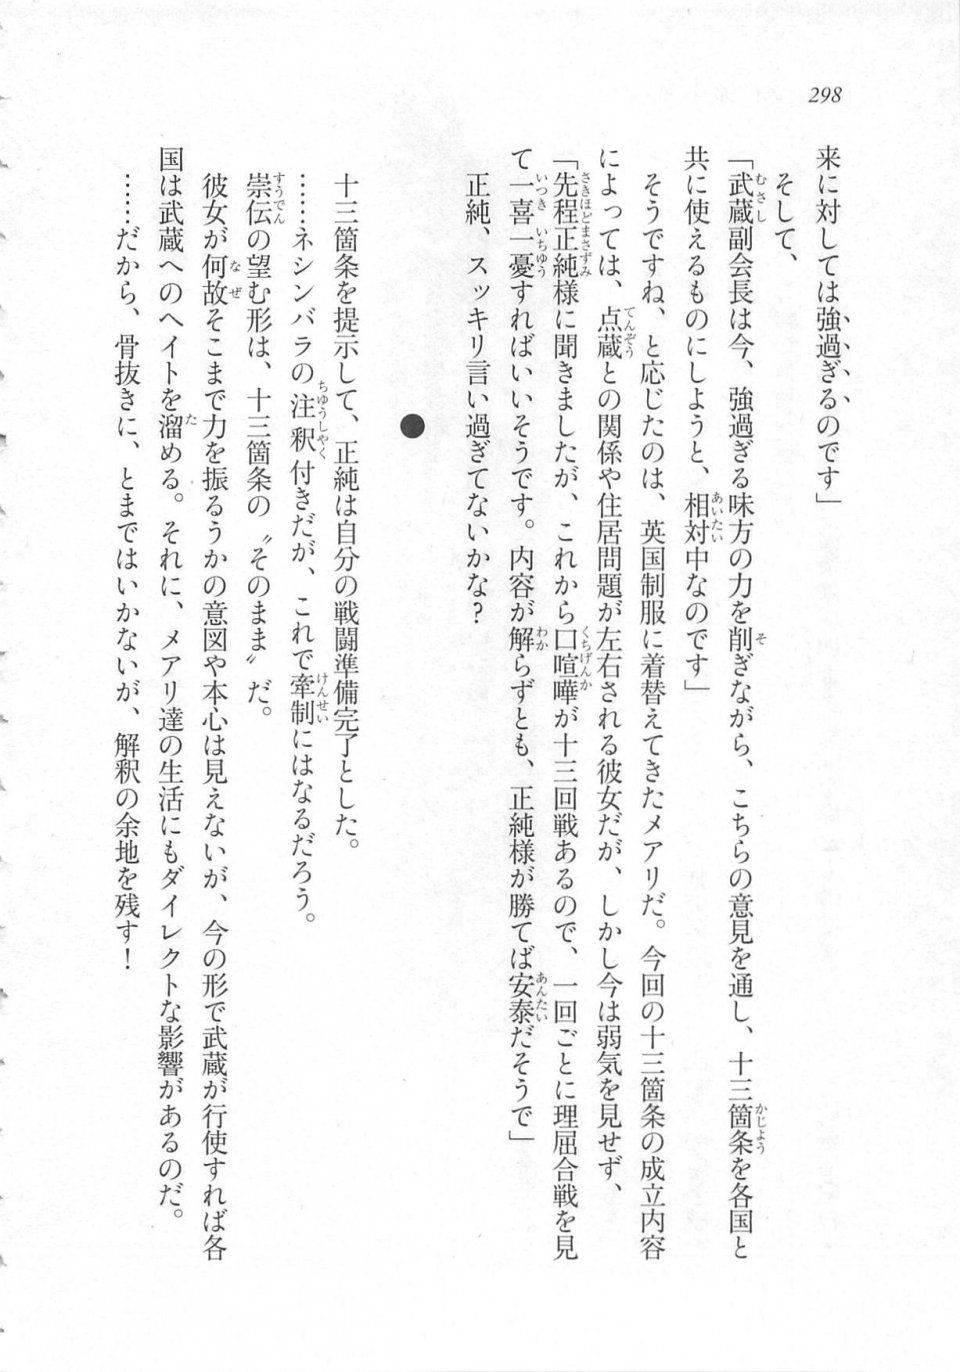 Kyoukai Senjou no Horizon LN Sidestory Vol 3 - Photo #302